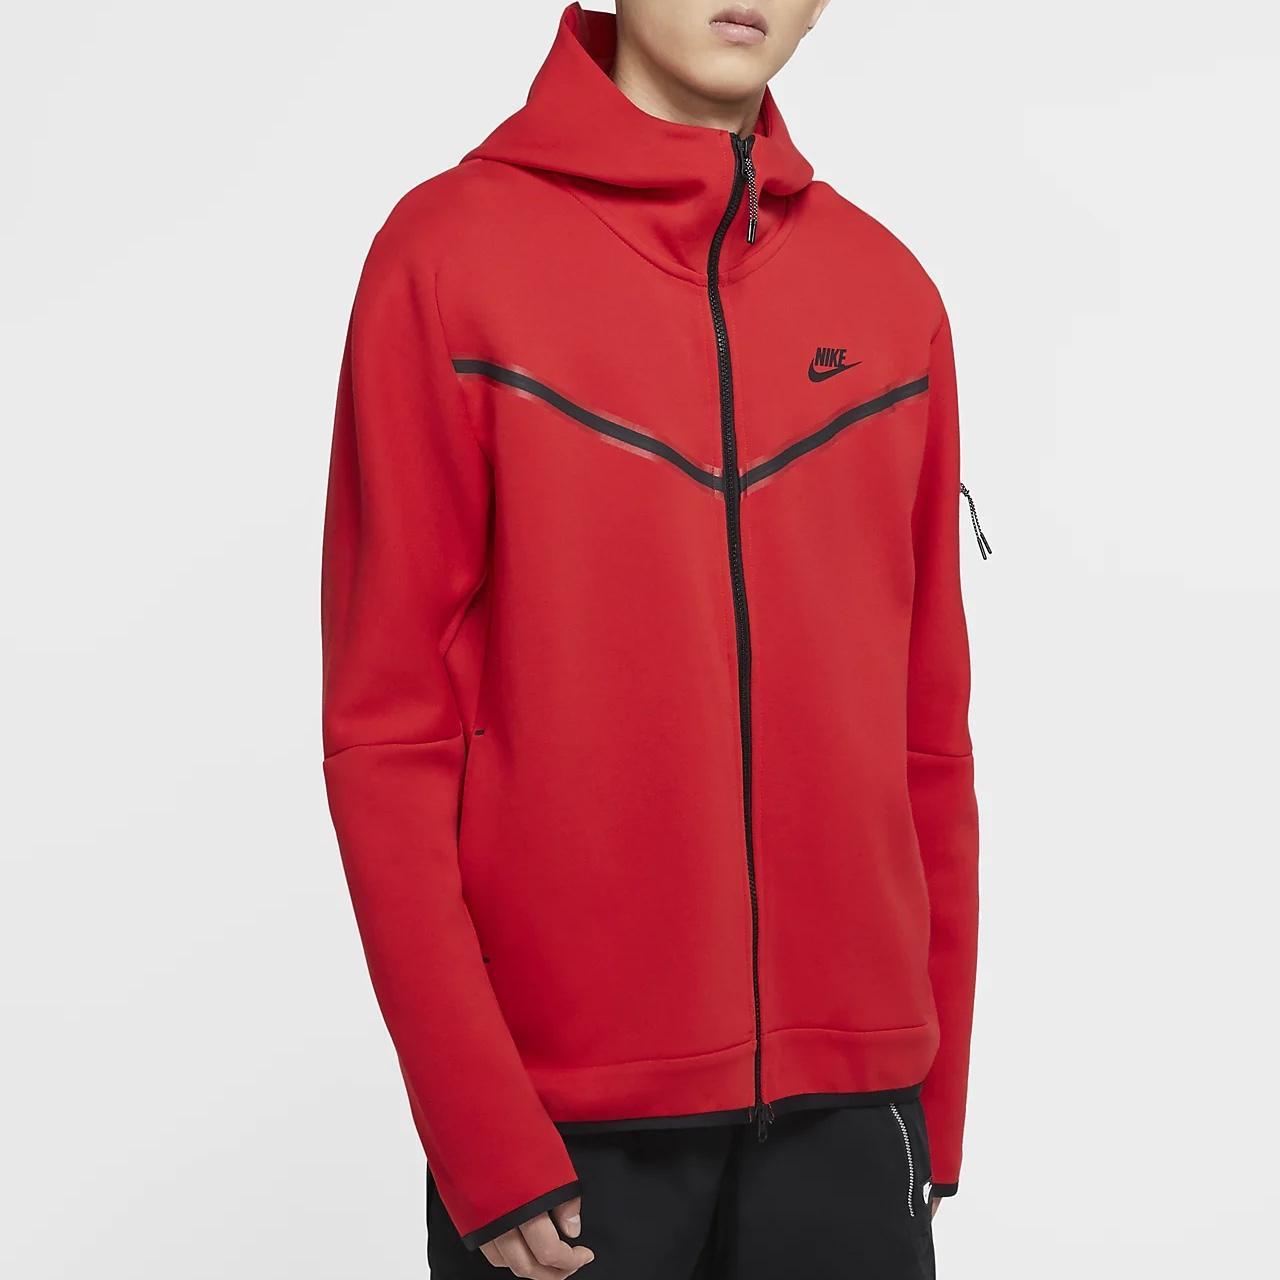 Nike sportswear Tech fleece Mens full zip up hoodie... - Depop